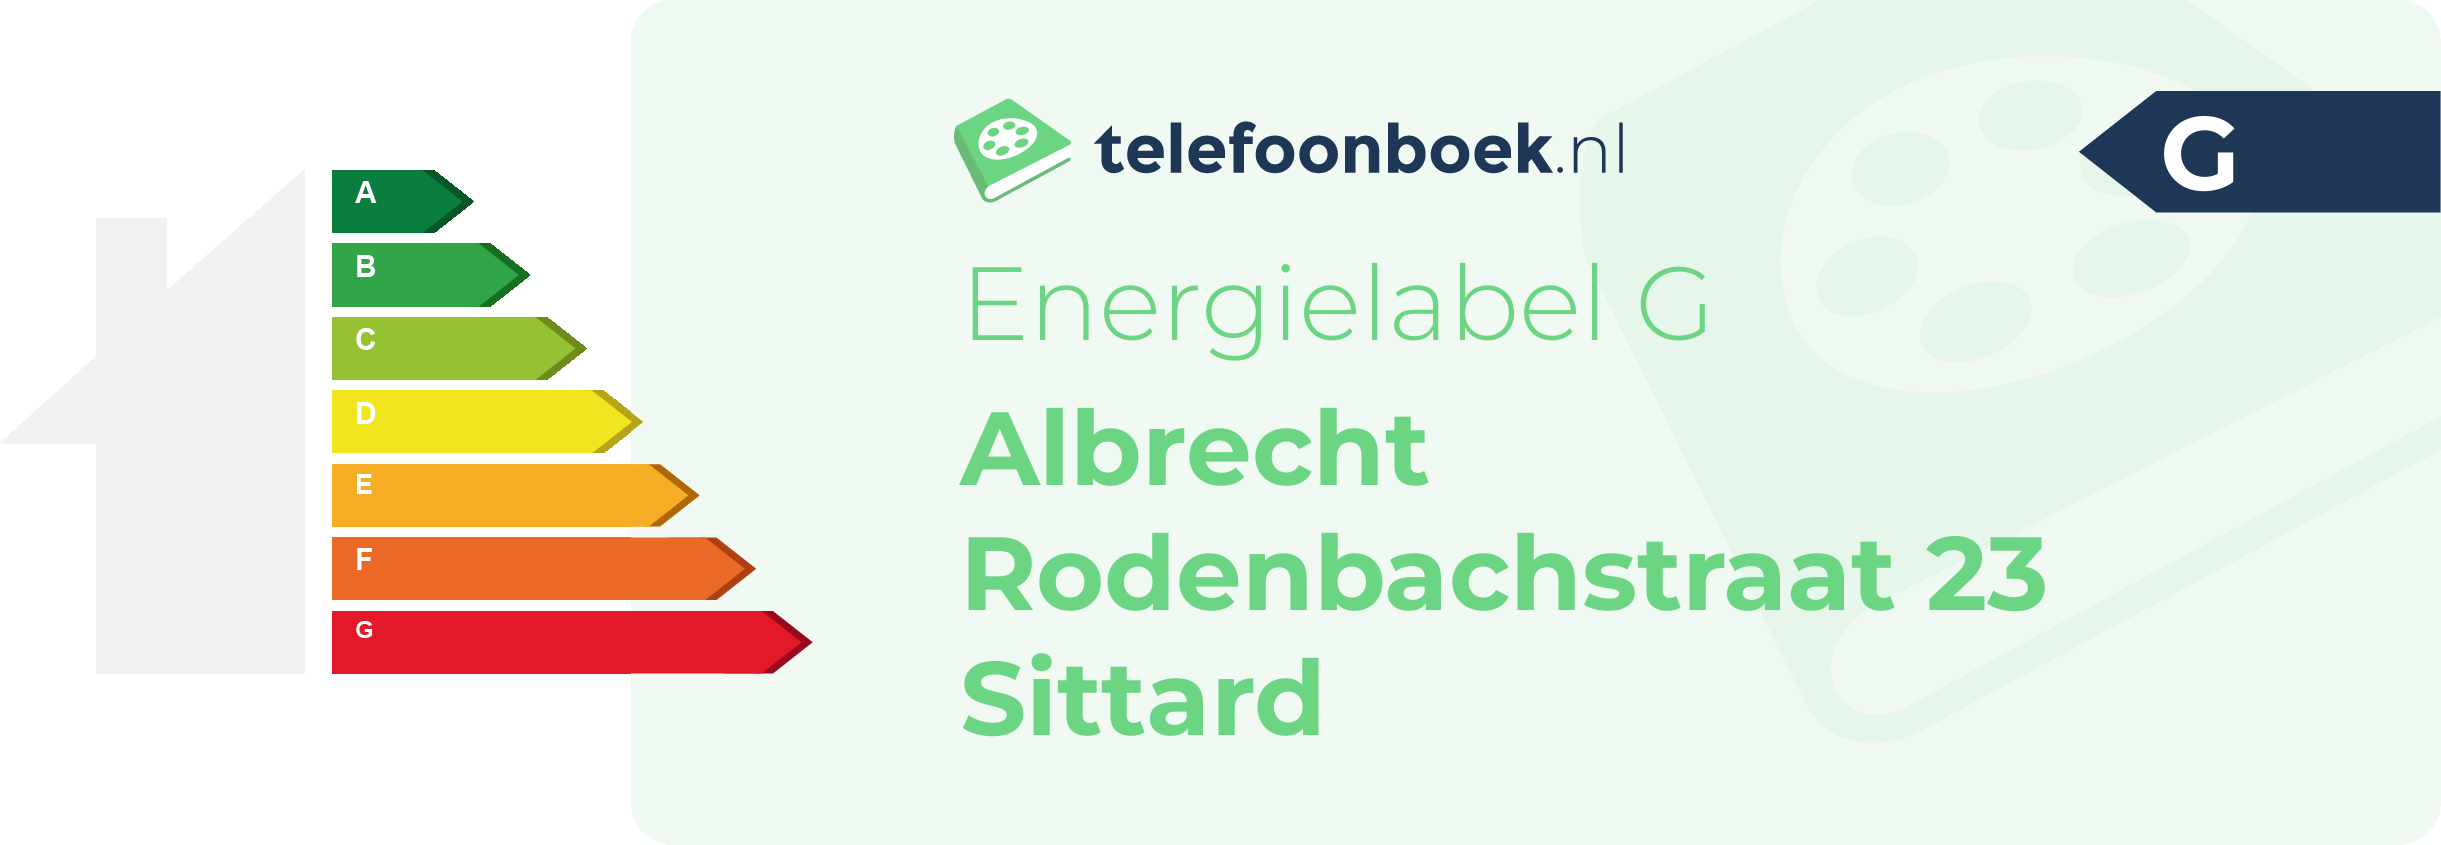 Energielabel Albrecht Rodenbachstraat 23 Sittard